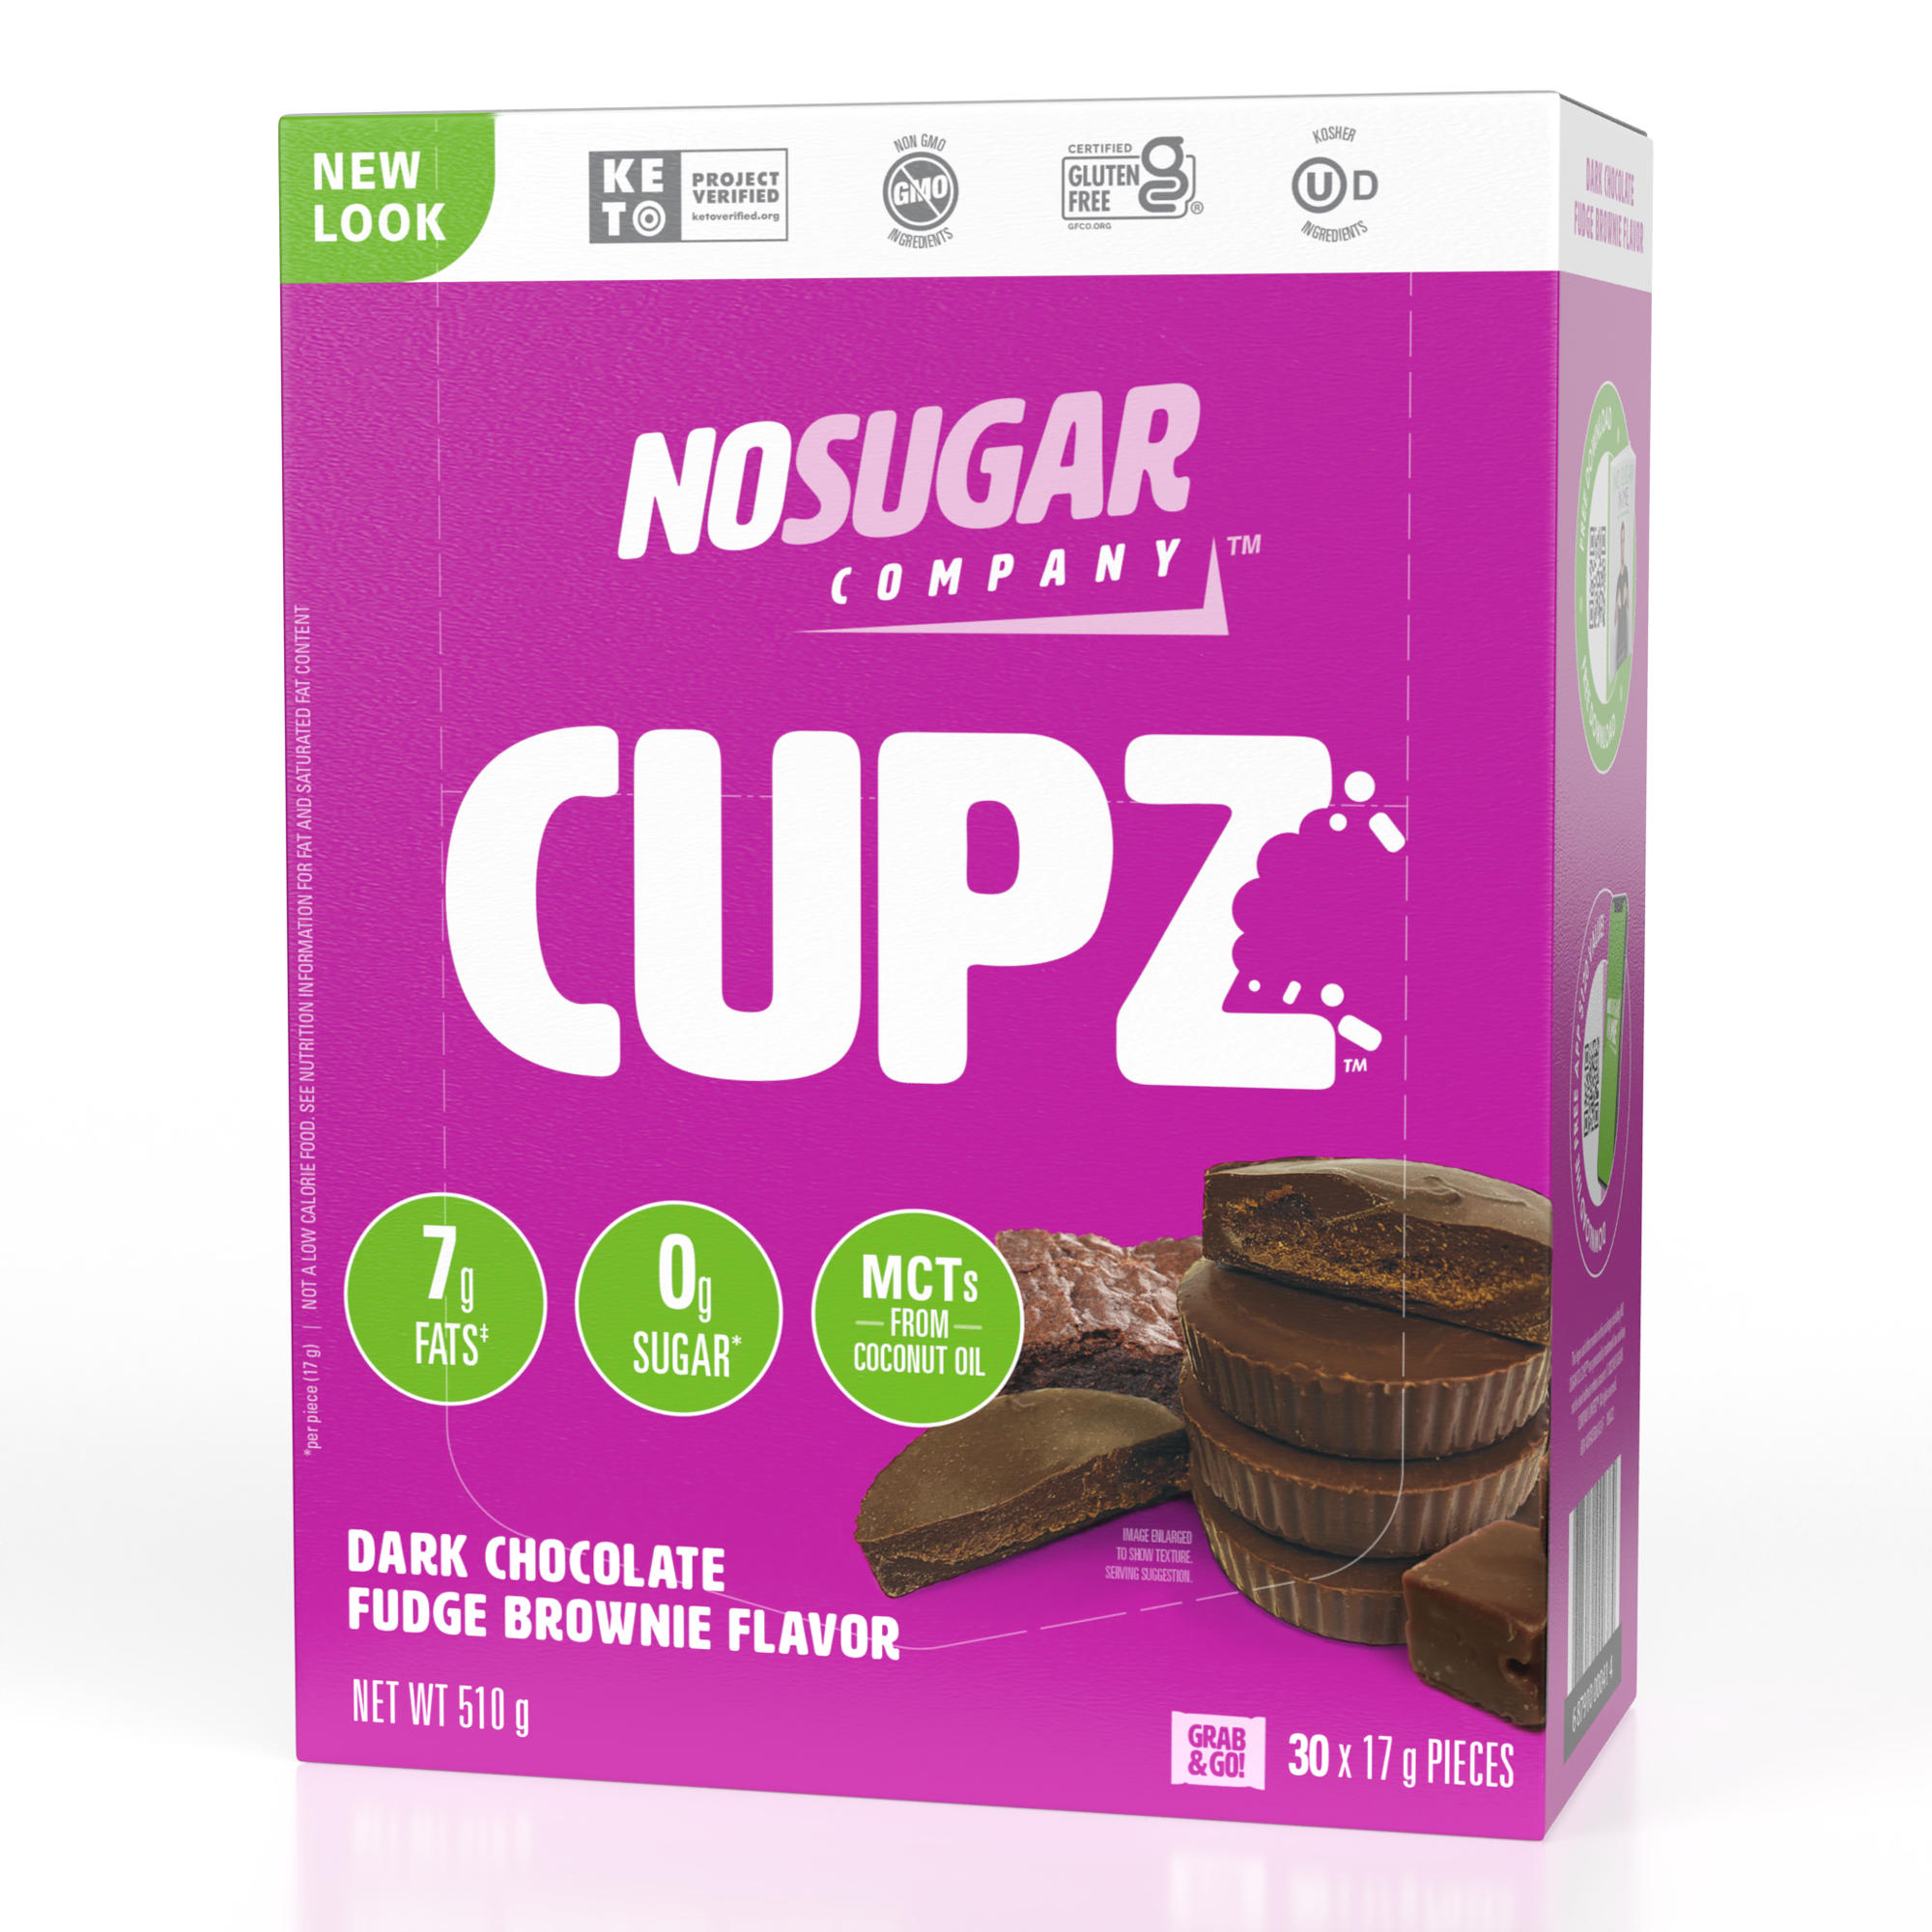 No Sugar Company Cupz in Dark Chocolate Fudge Brownie. Keto Verified and 0 grams of Sugar.